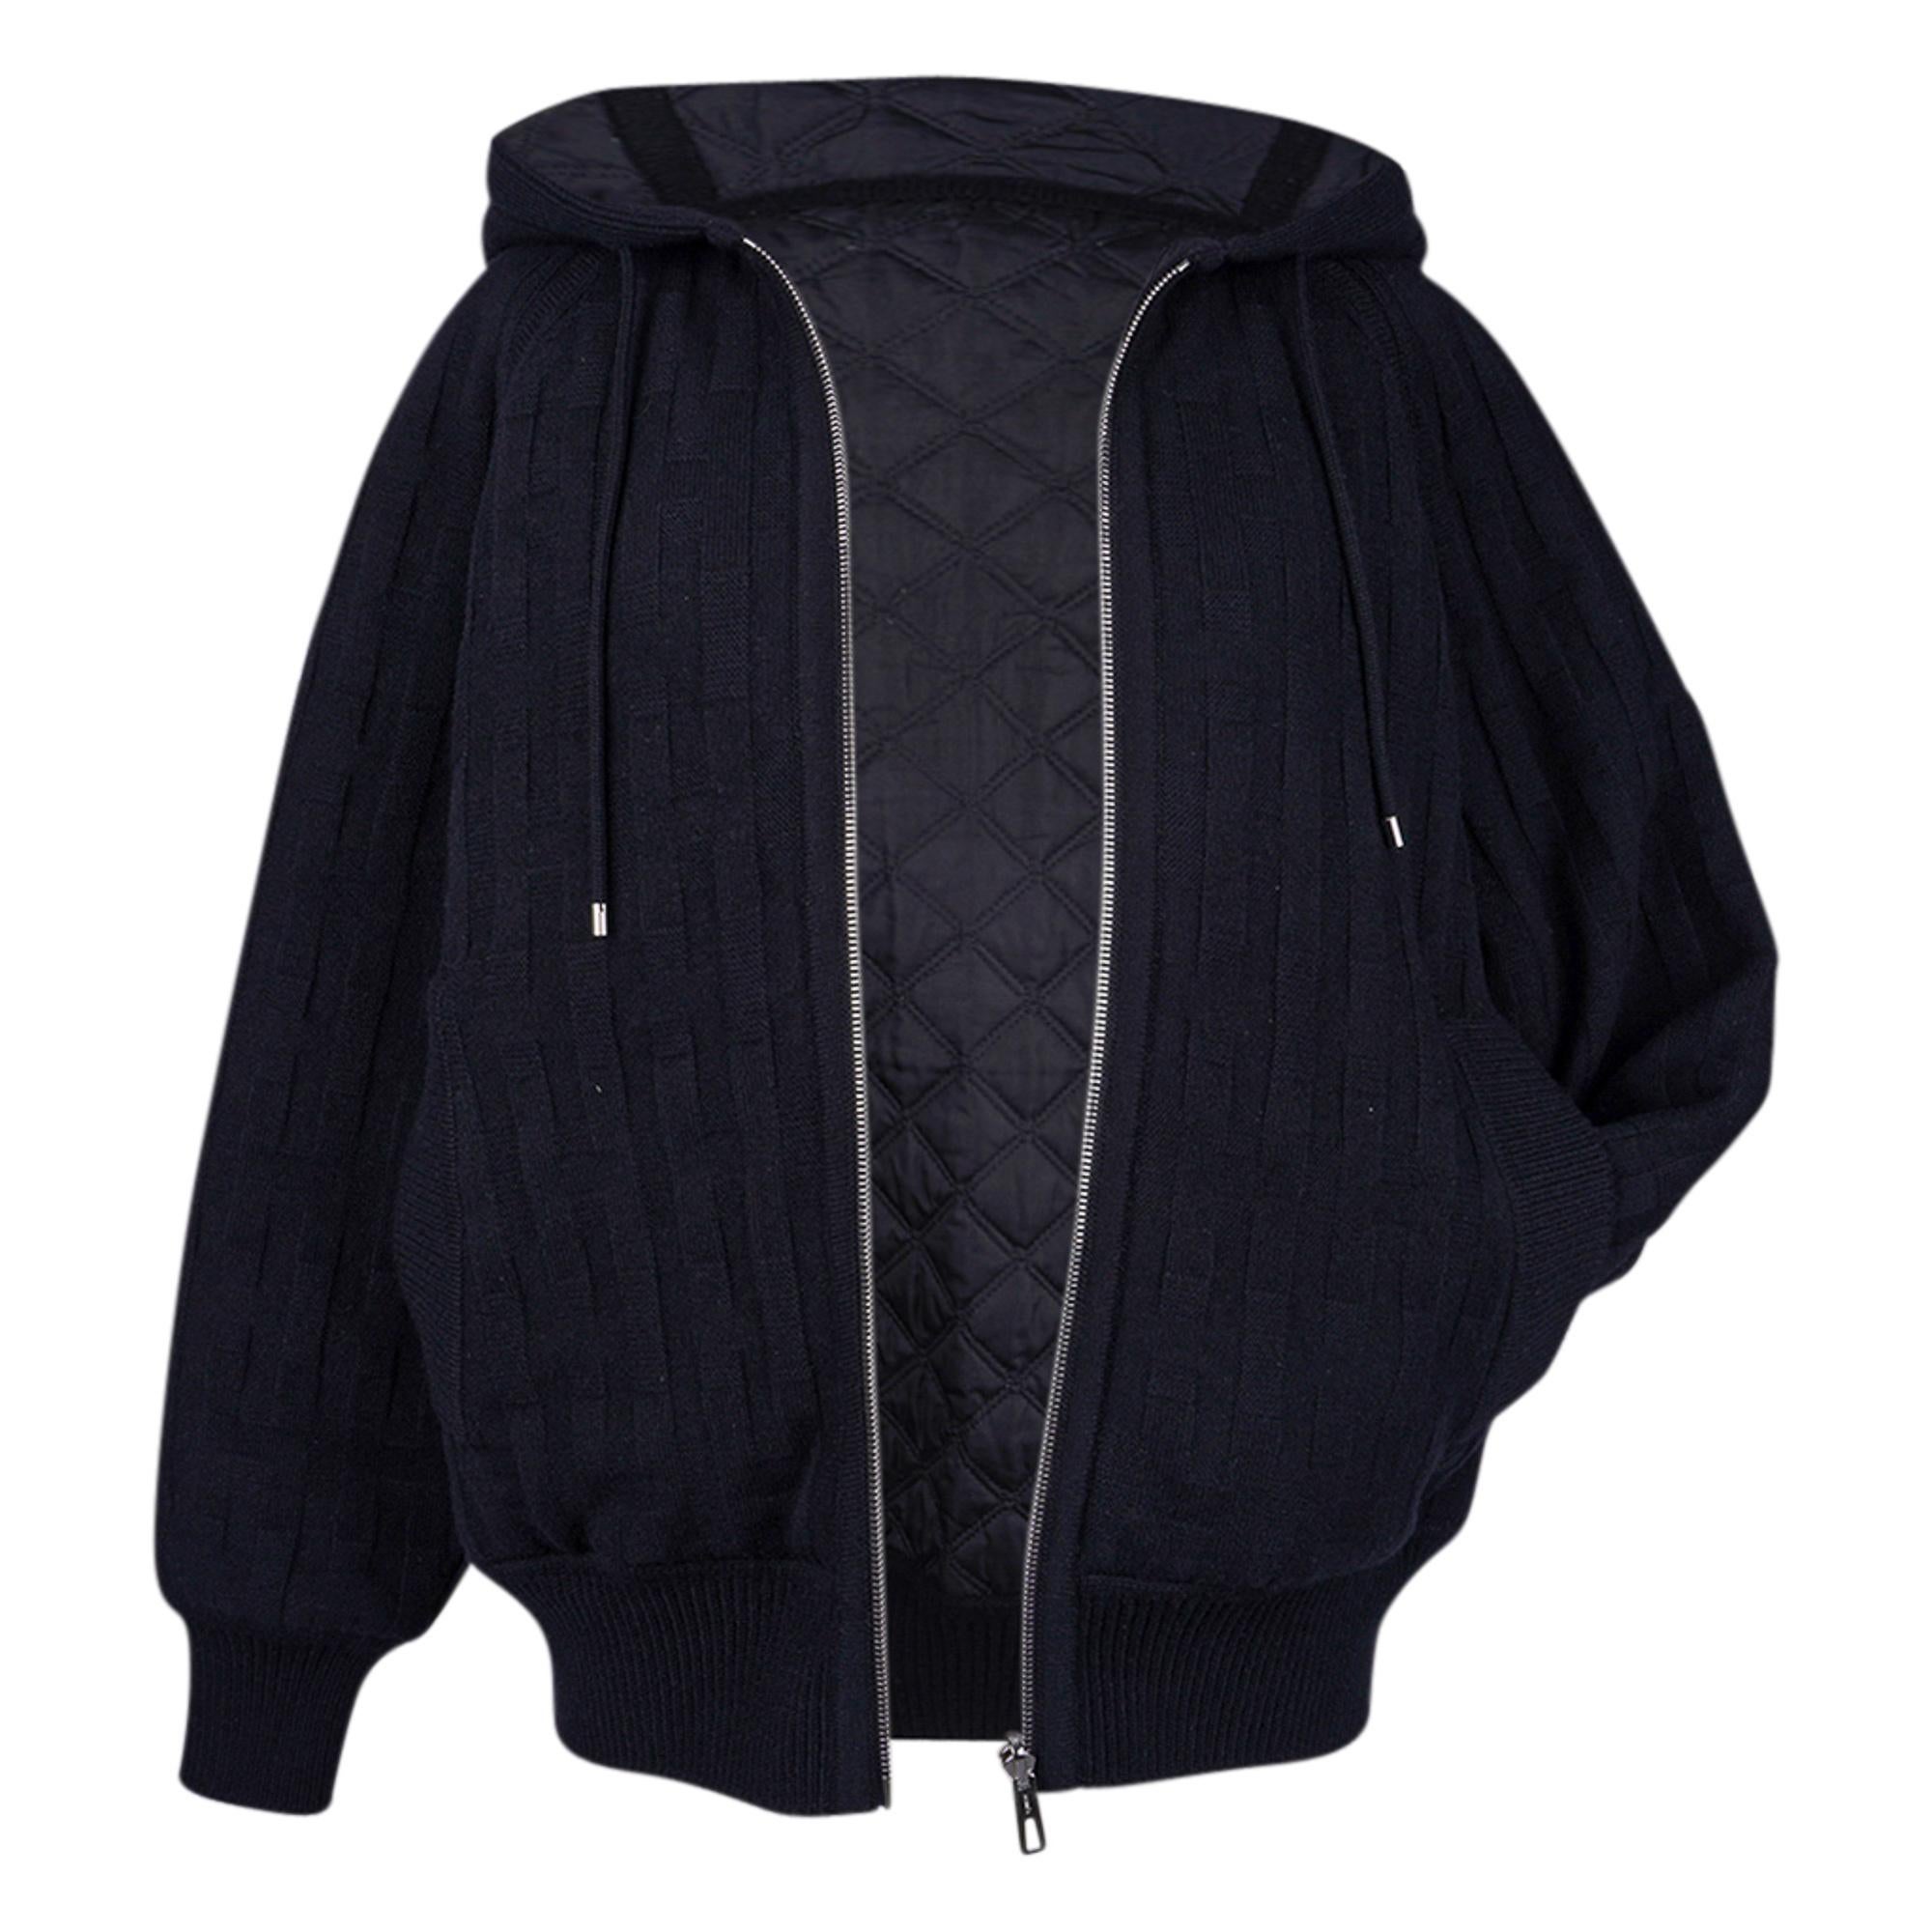 Mightychic bietet einen Hermès Reversible Zip Cardigan in Schwarz auf Schwarz an.
Warm mit Kapuze und gestepptem Baumwoll-, Woll- und Federleinen.
Schurwolle mit Losanges und H-Motiven.
Umgekehrt wattierte braune Steppseite mit geripptem Bund und